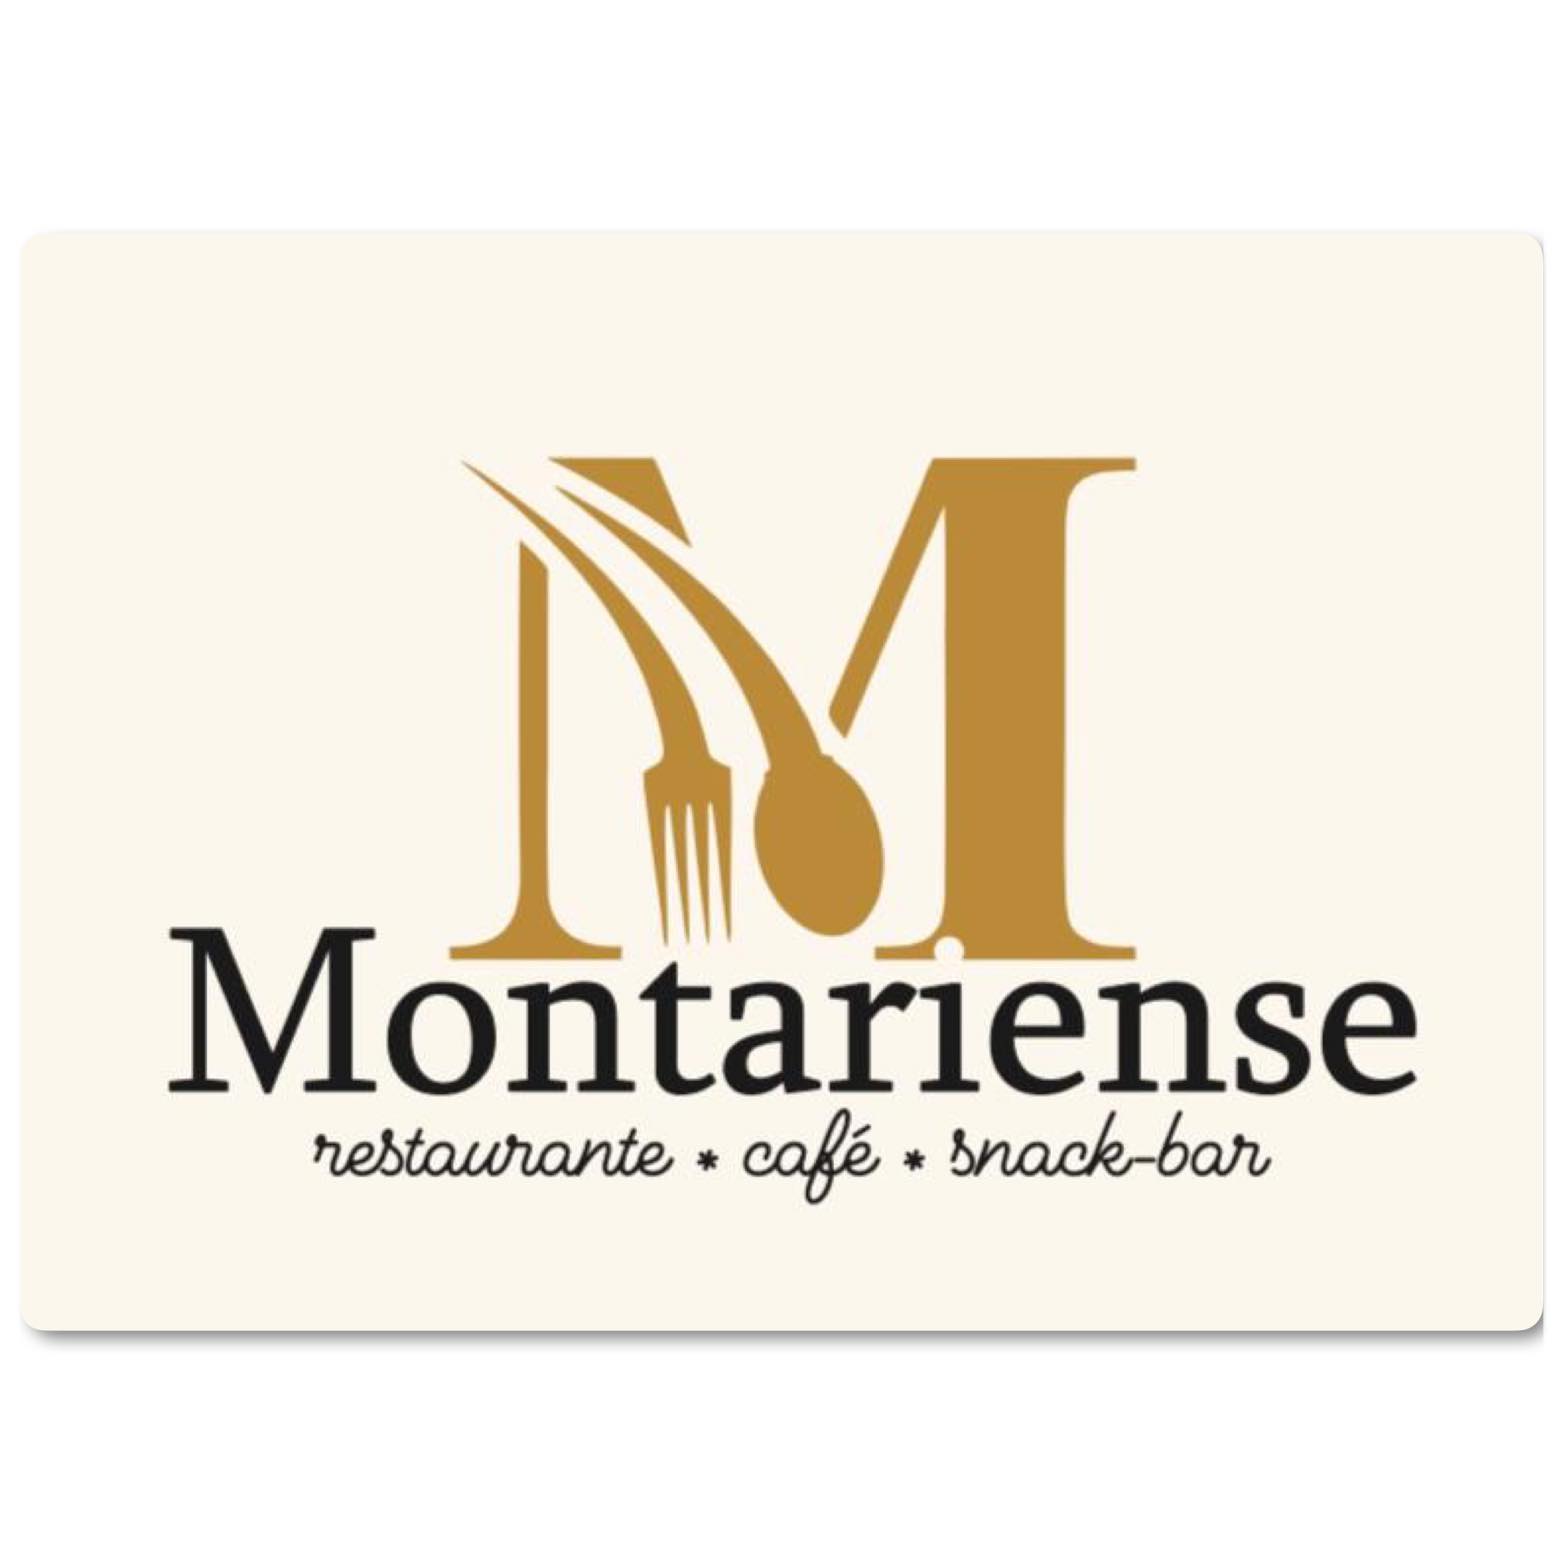 Restaurante Montariense